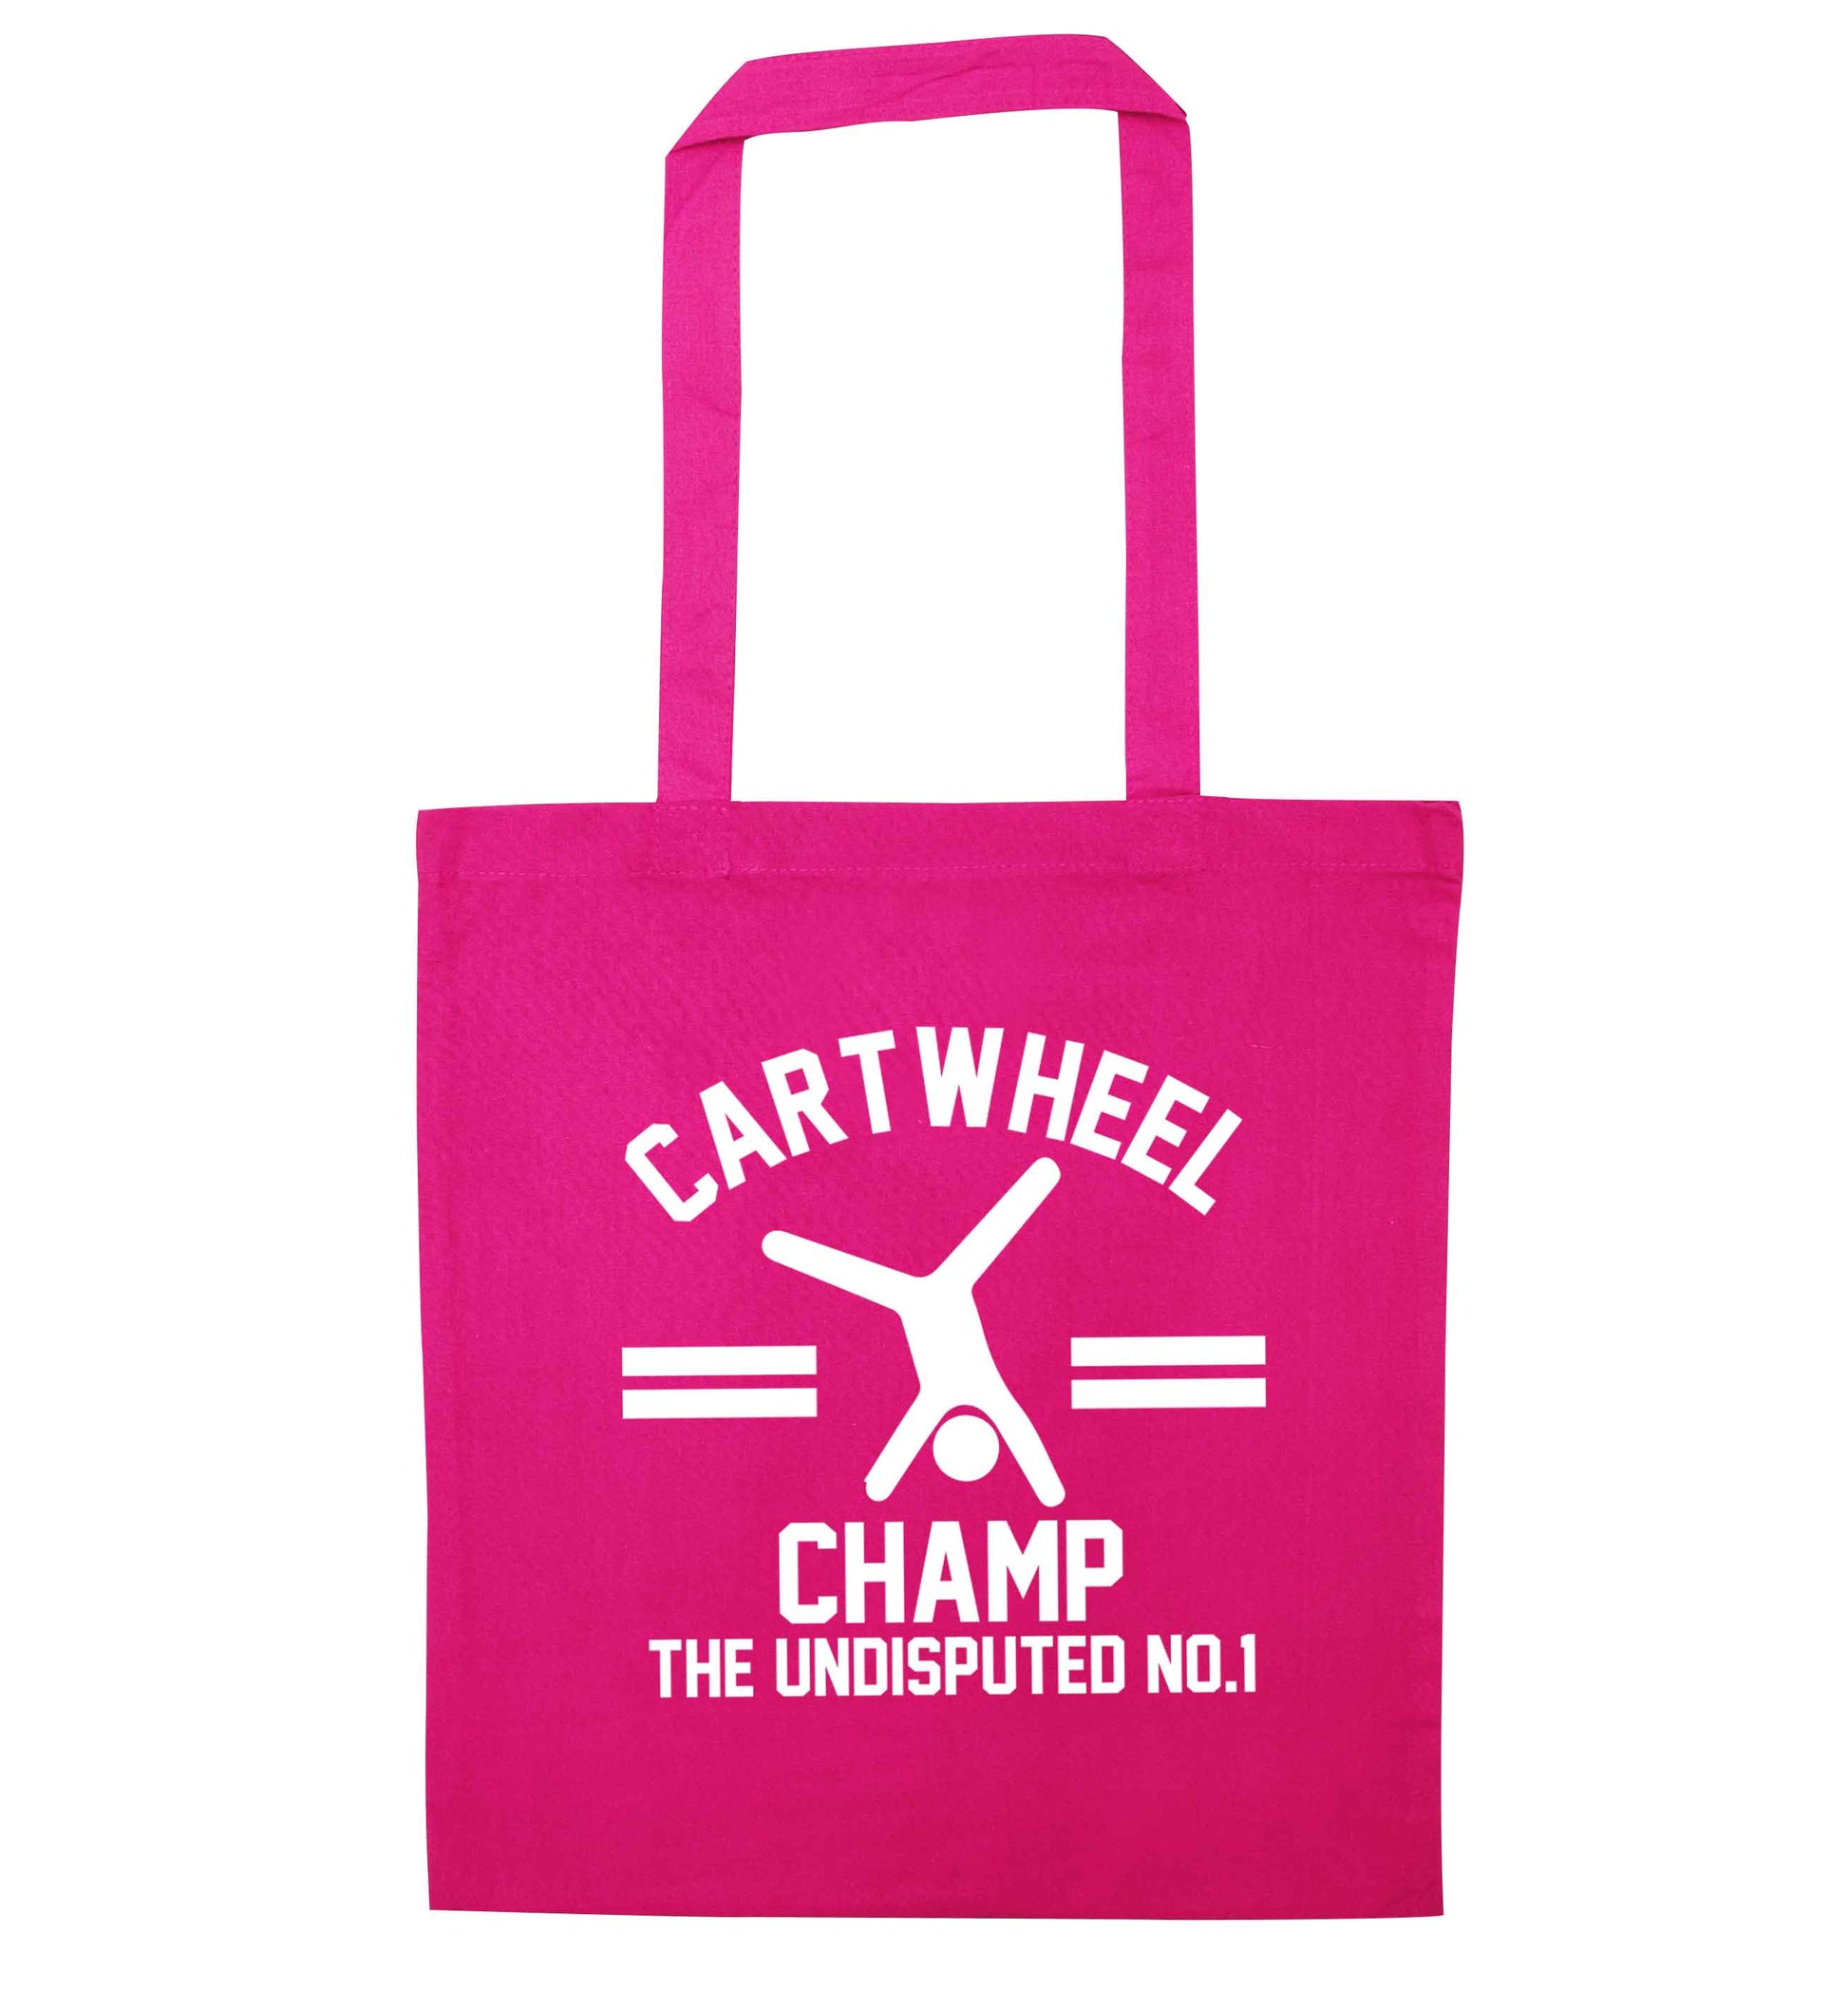 Undisputed cartwheel championship no.1  pink tote bag